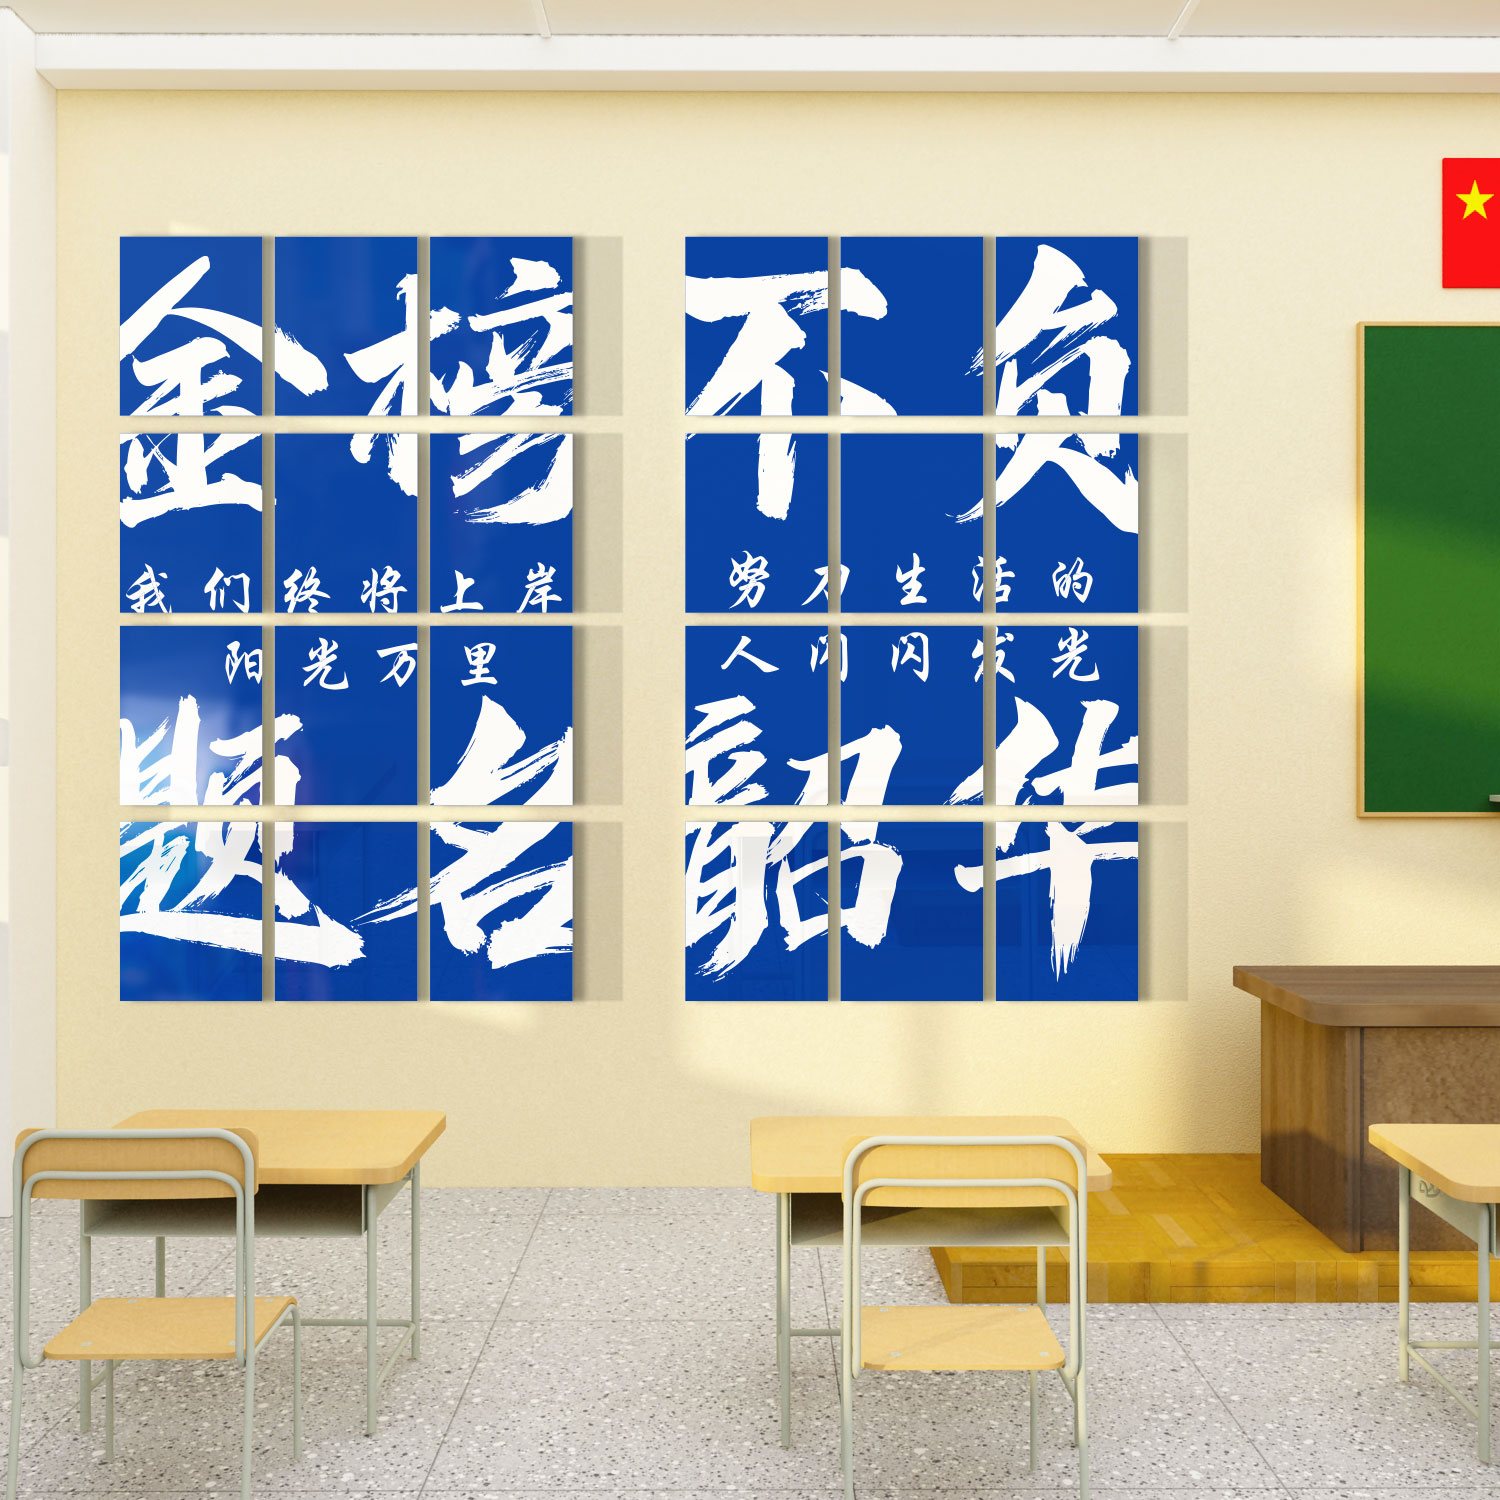 教室布置装饰班级文化墙贴纸初高中黑板报励志标语环创自习室创意